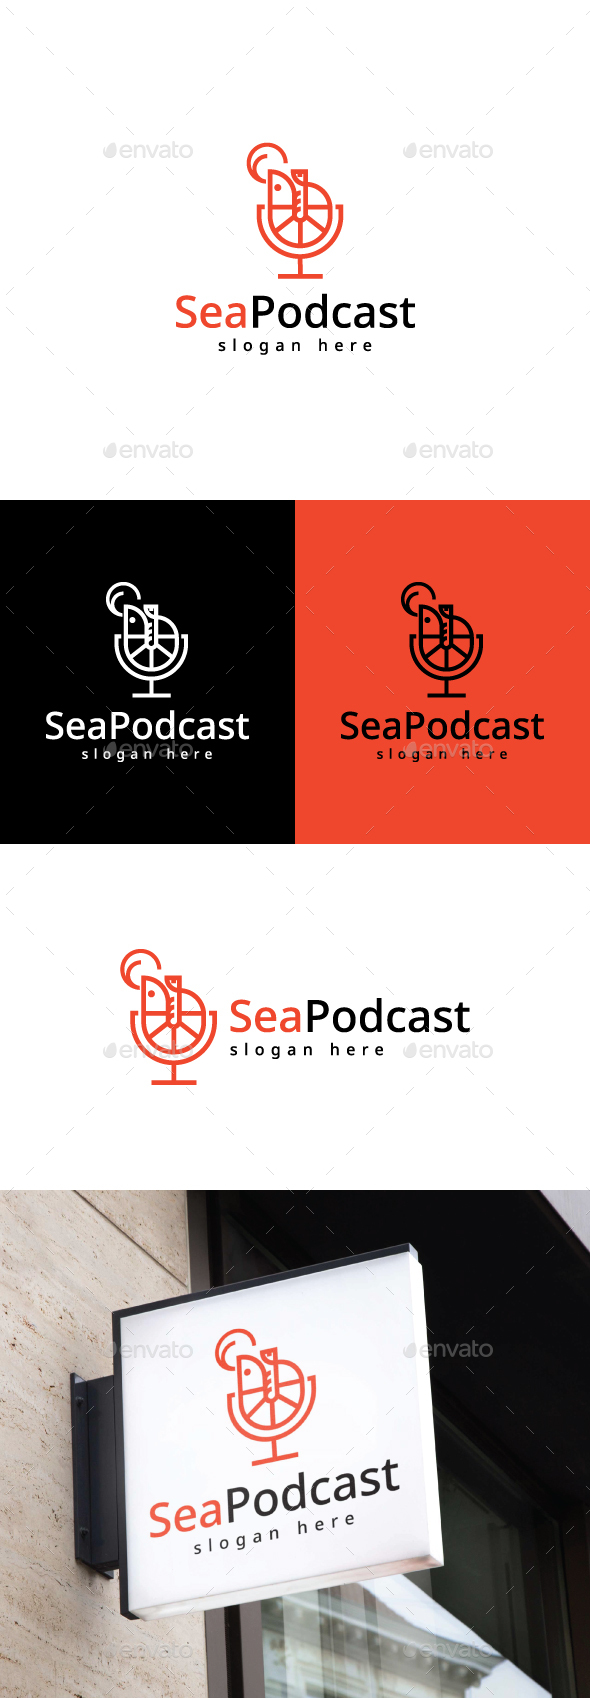 [DOWNLOAD]Shrimp Fish Podcast Logo